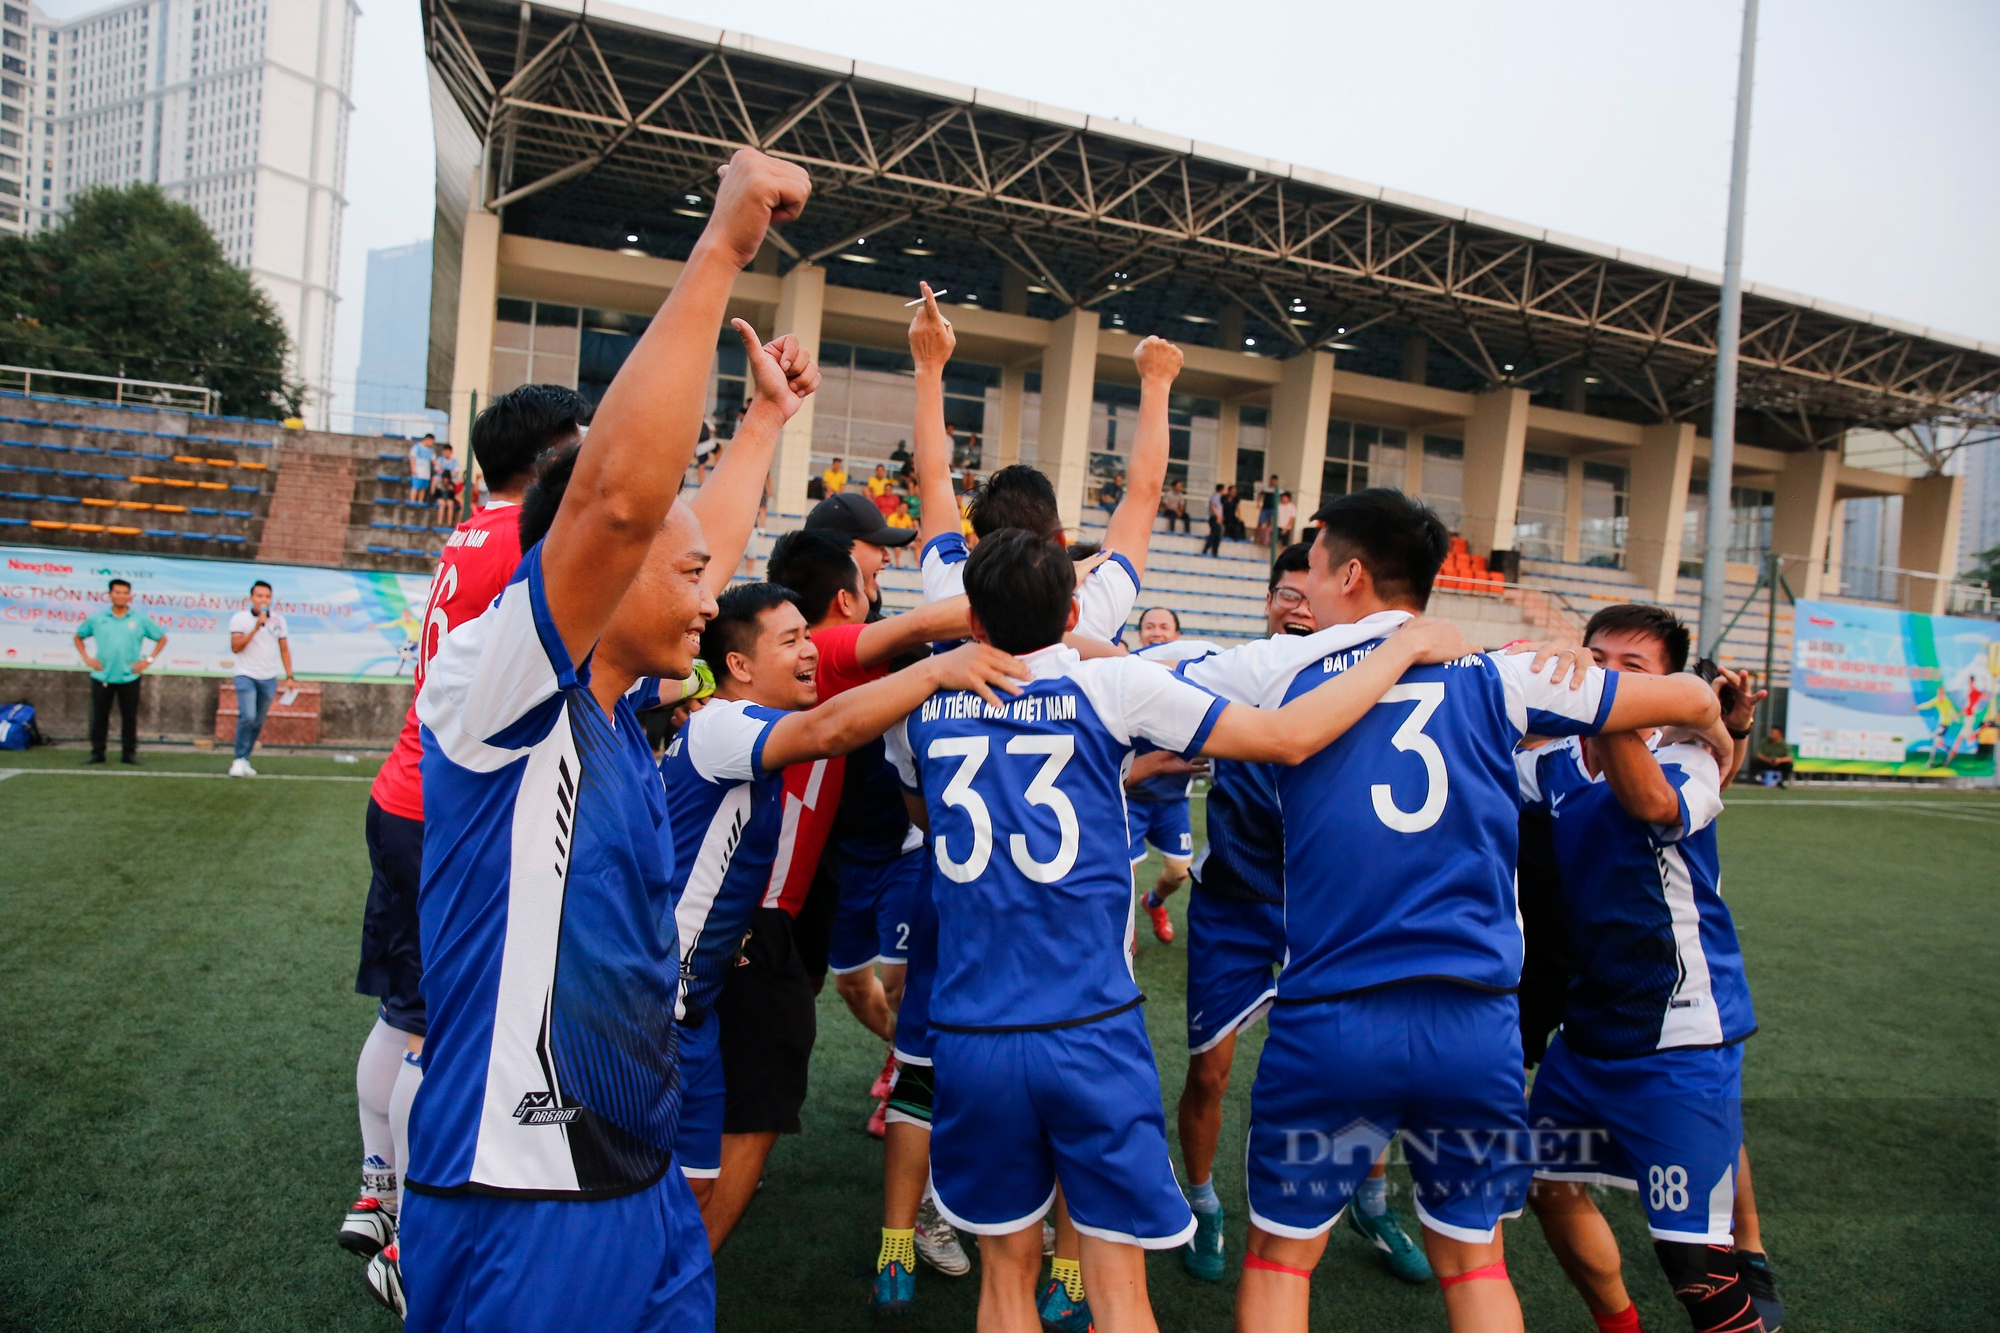 Đội bóng VOV chính thức lên ngôi vô địch sau chiến thắng nghẹt thở trước báo Lao Động - Ảnh 14.